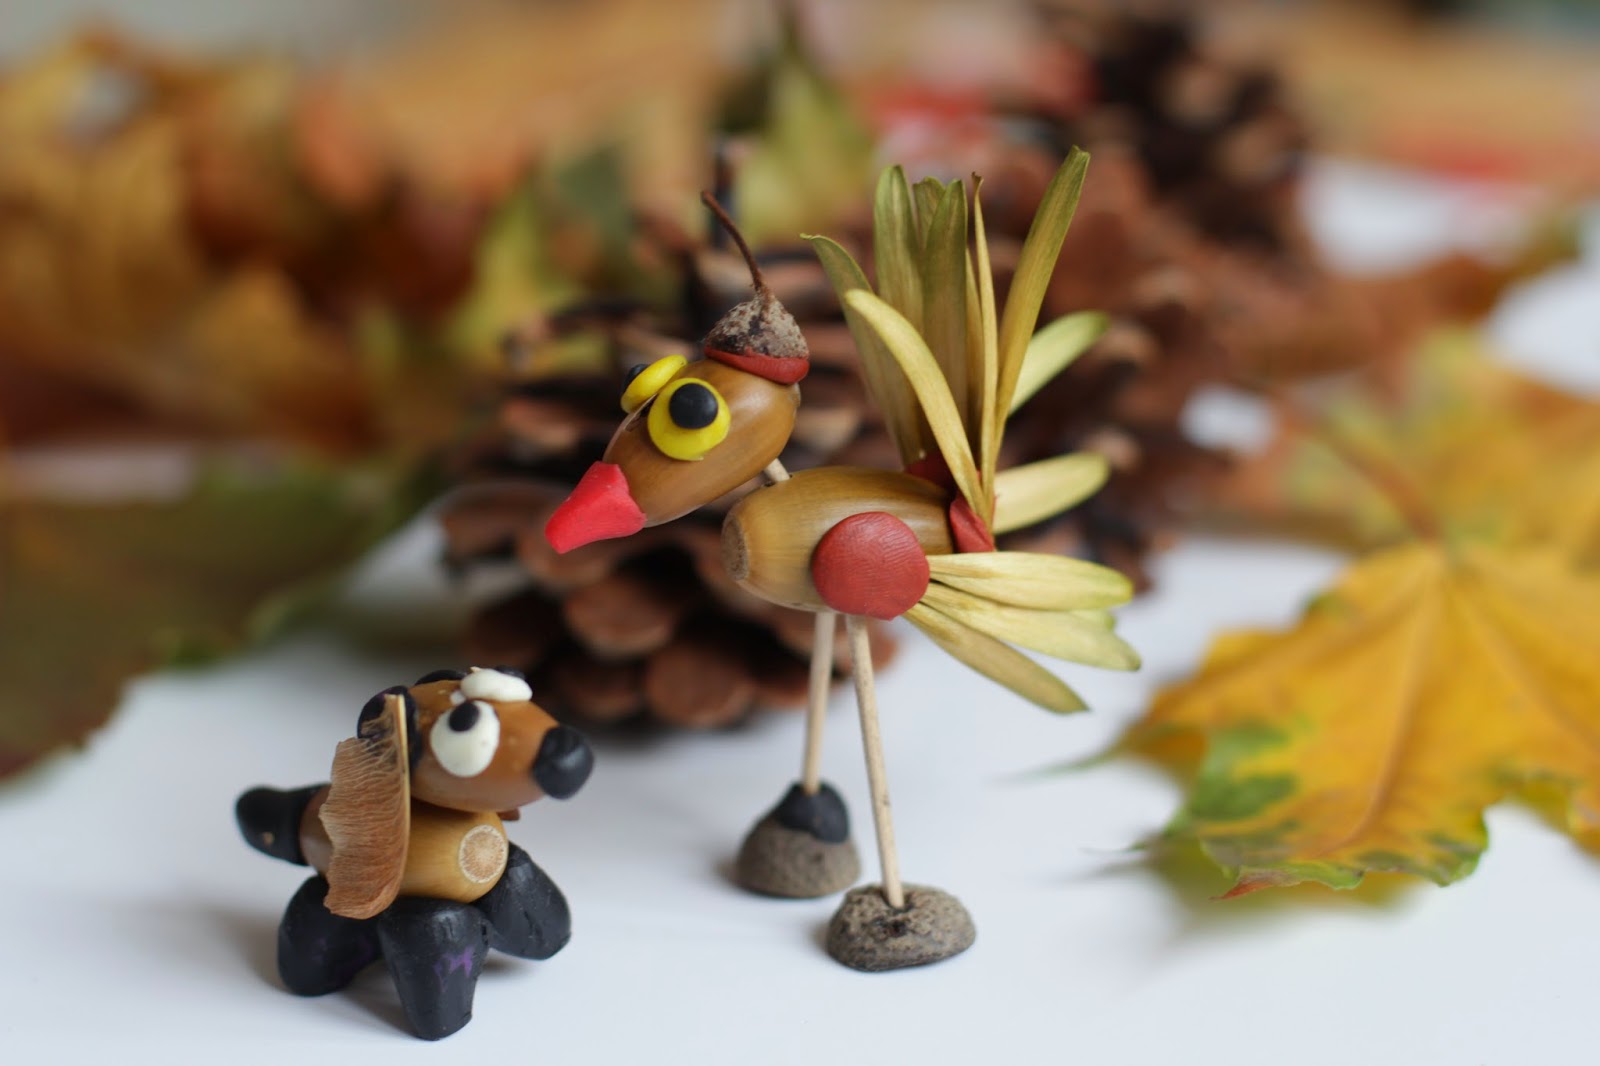 Поделки из пластилина для детей на тему осень: Осенняя поделка (обратная аппликация из пластилина)